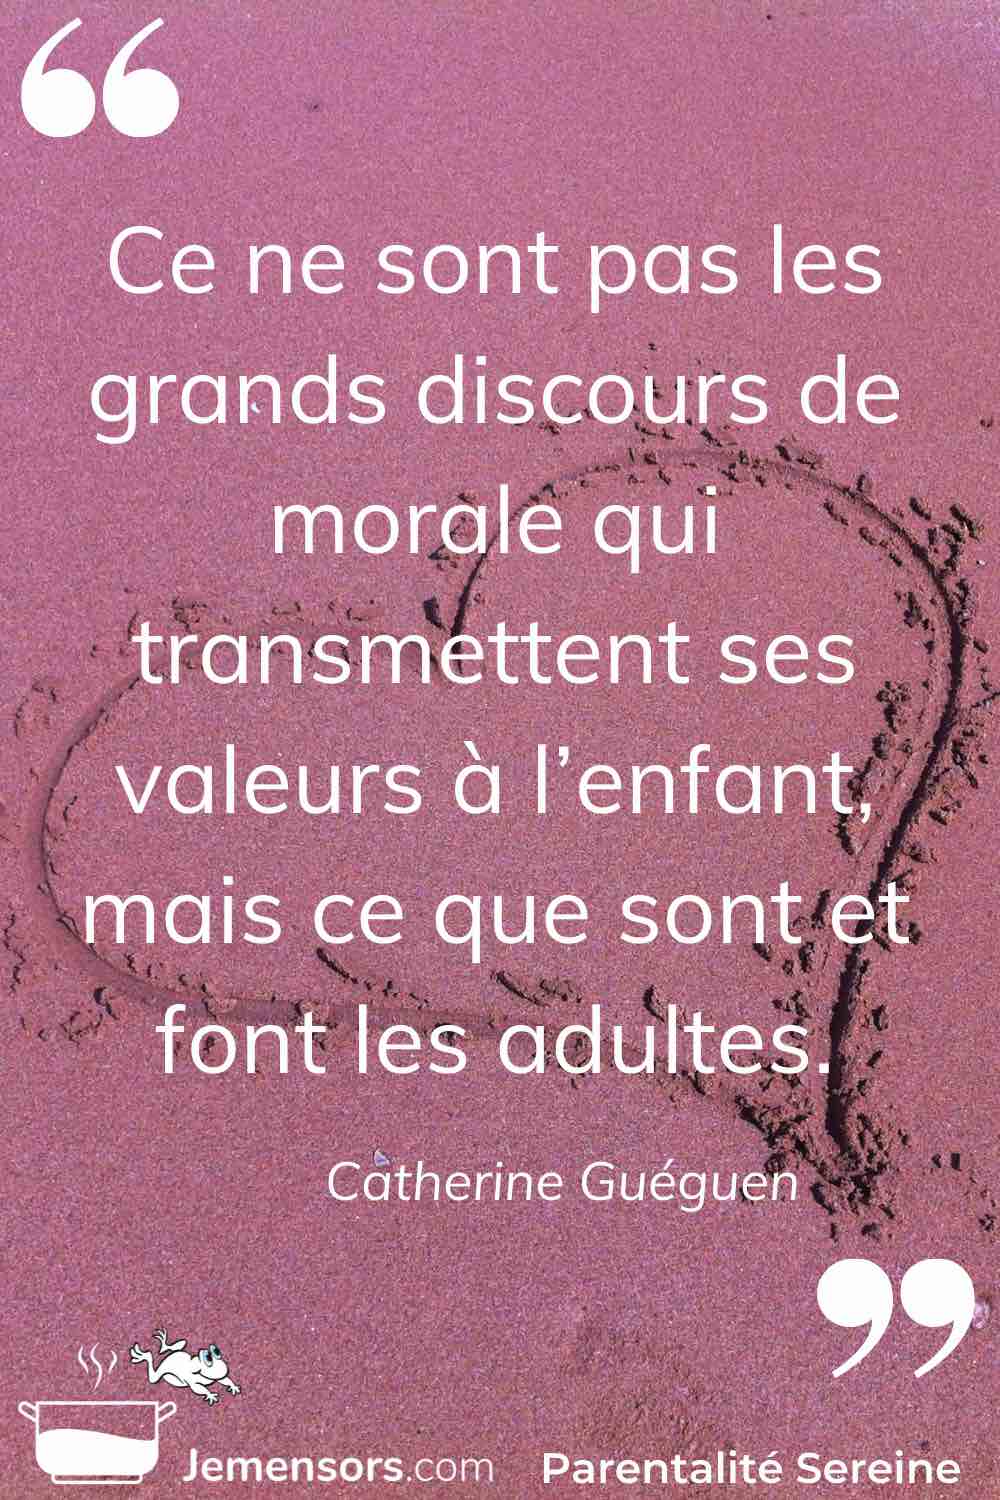 "Ce ne sont pas les grands discours de morale qui transmettent ses valeurs à l’enfant, mais ce que sont et font les adultes." Catherine Guéguen